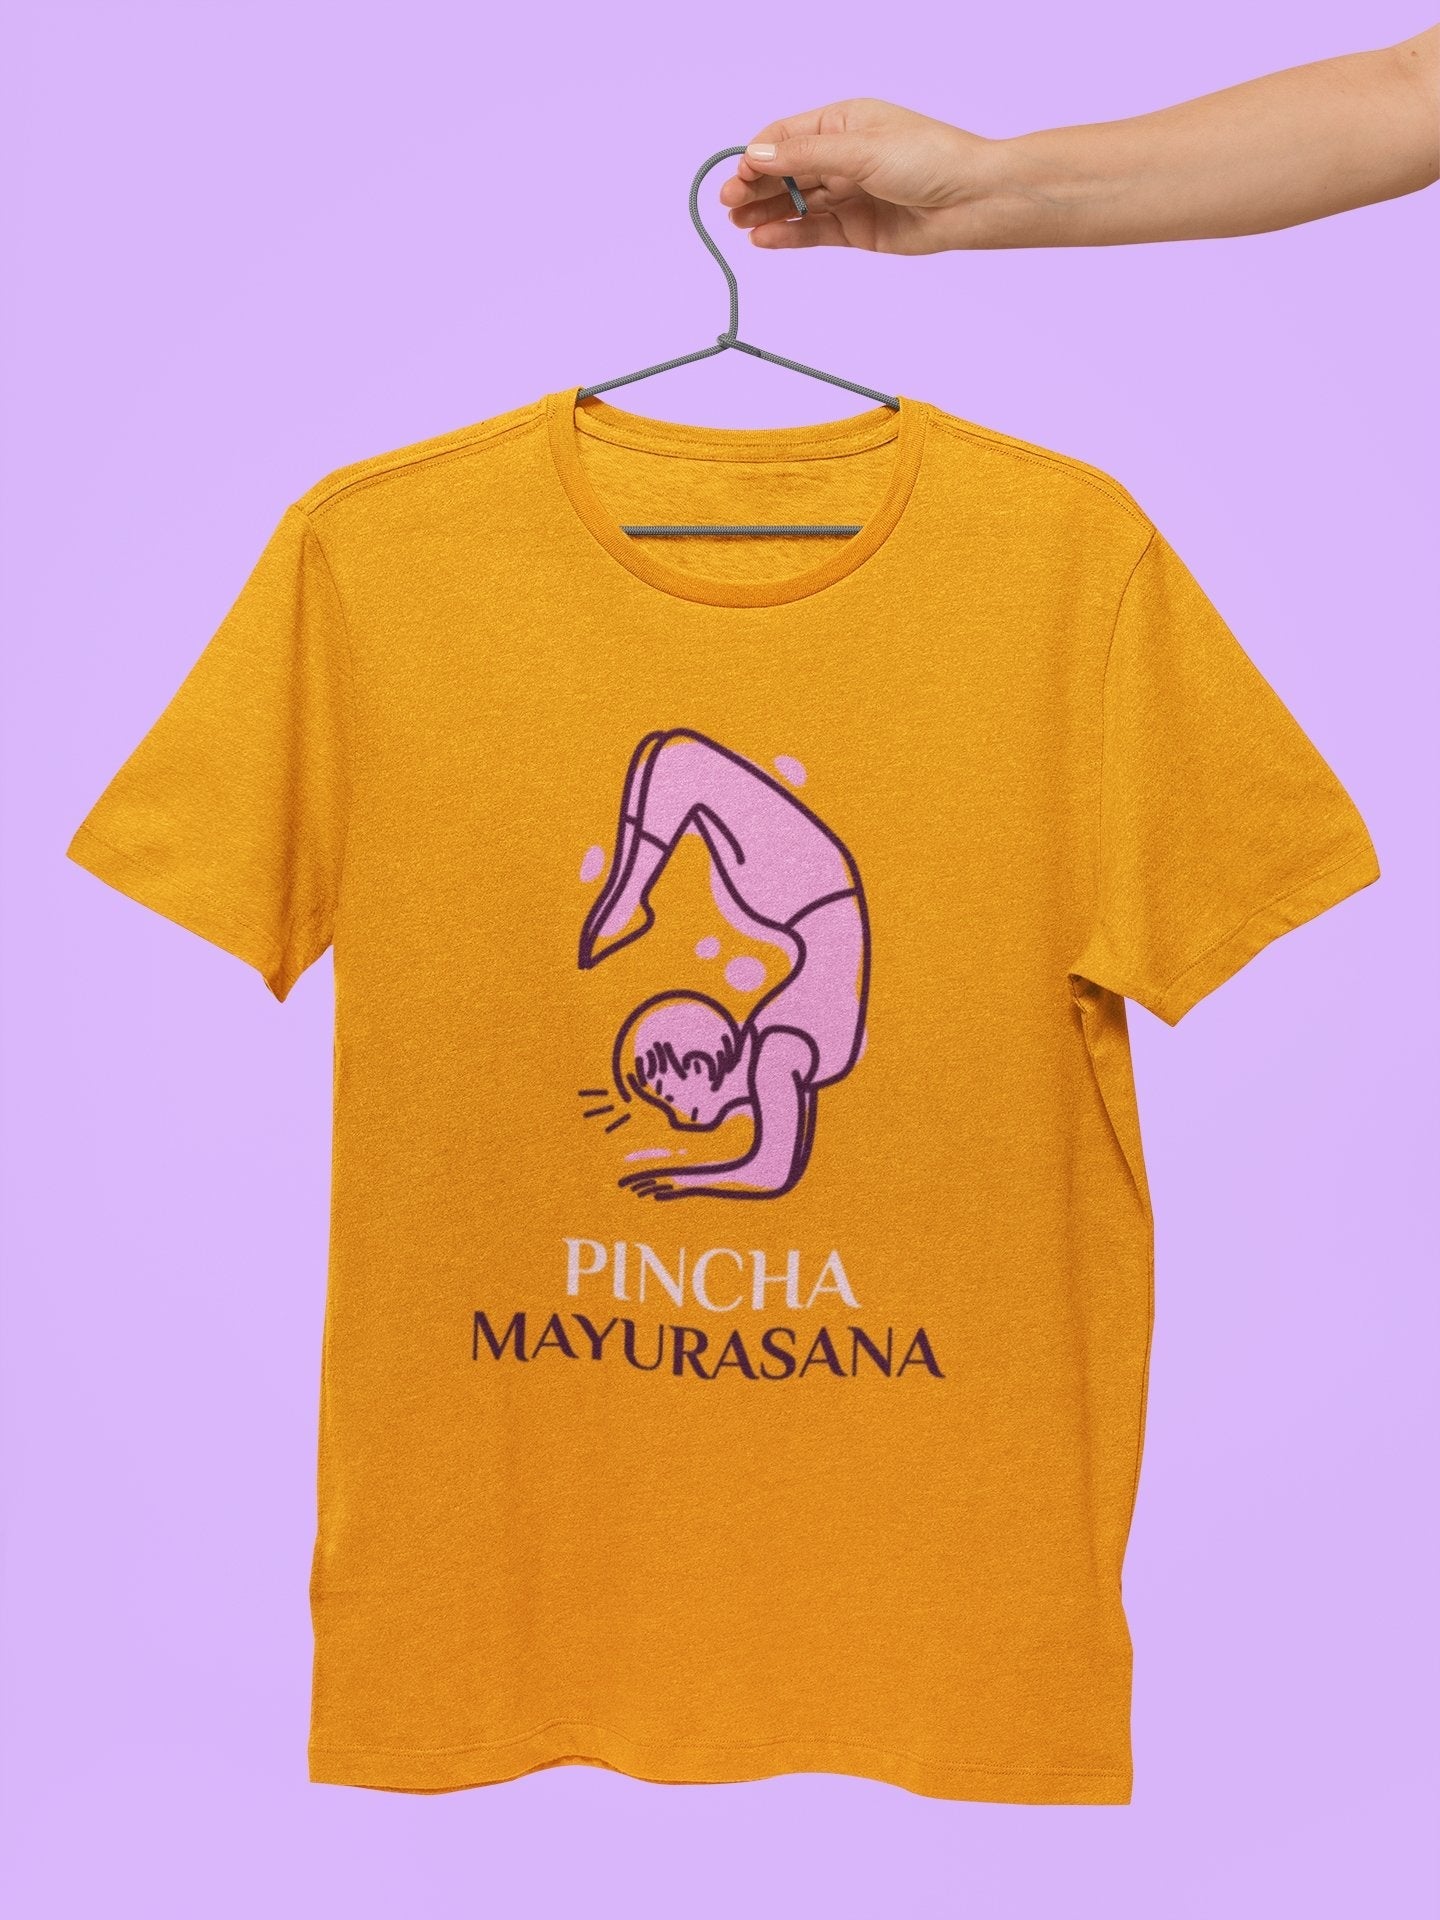 thelegalgang,Pincha Mayurasana design Yoga T shirt for Men,MEN.